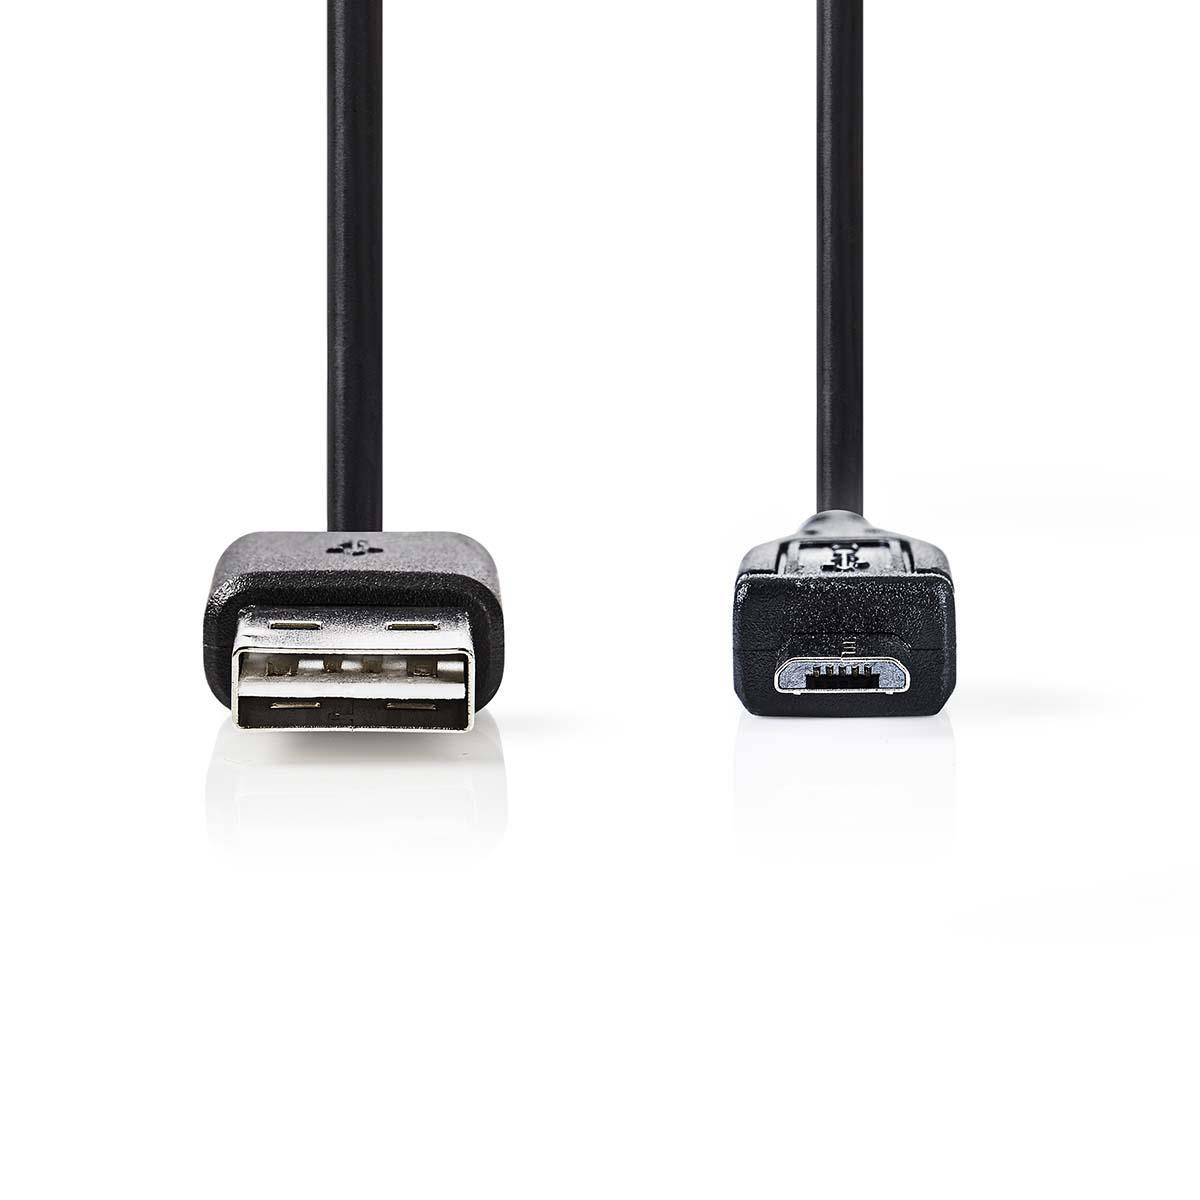 NEDIS CCGP60570BK02 USB Micro-B Adapter